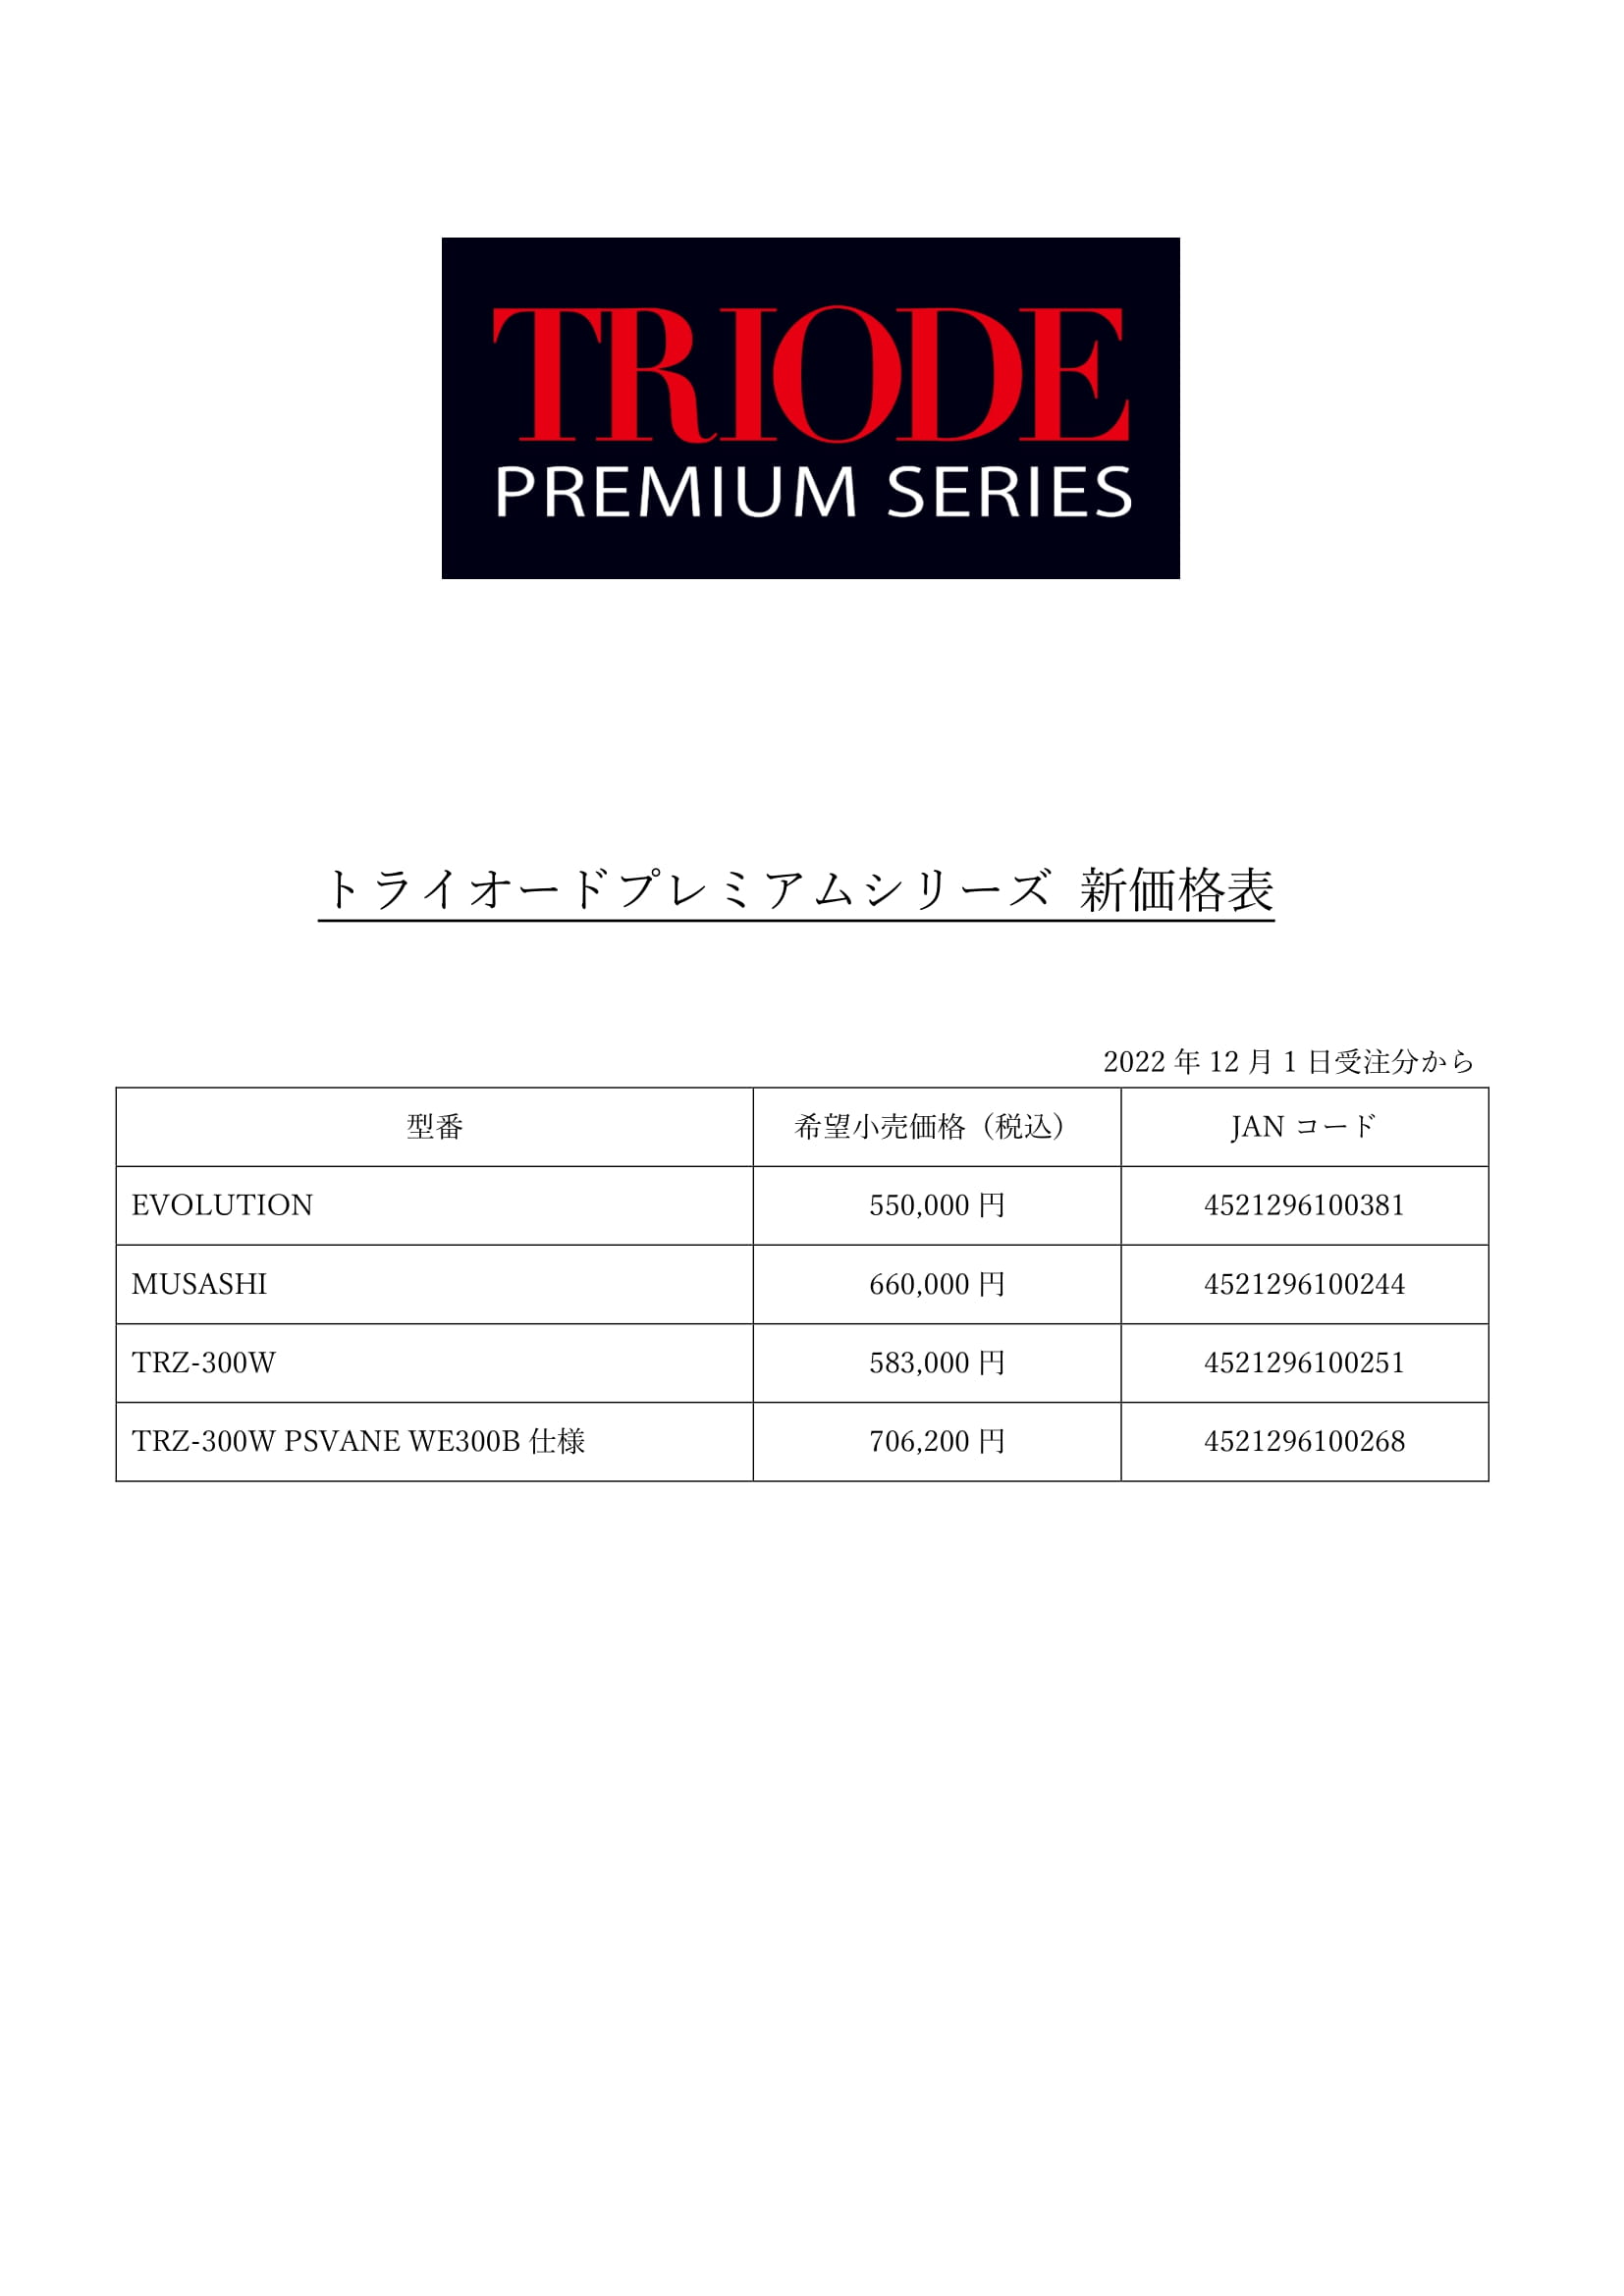 トライオード プレミアムシリーズ 新価格表 220902-1